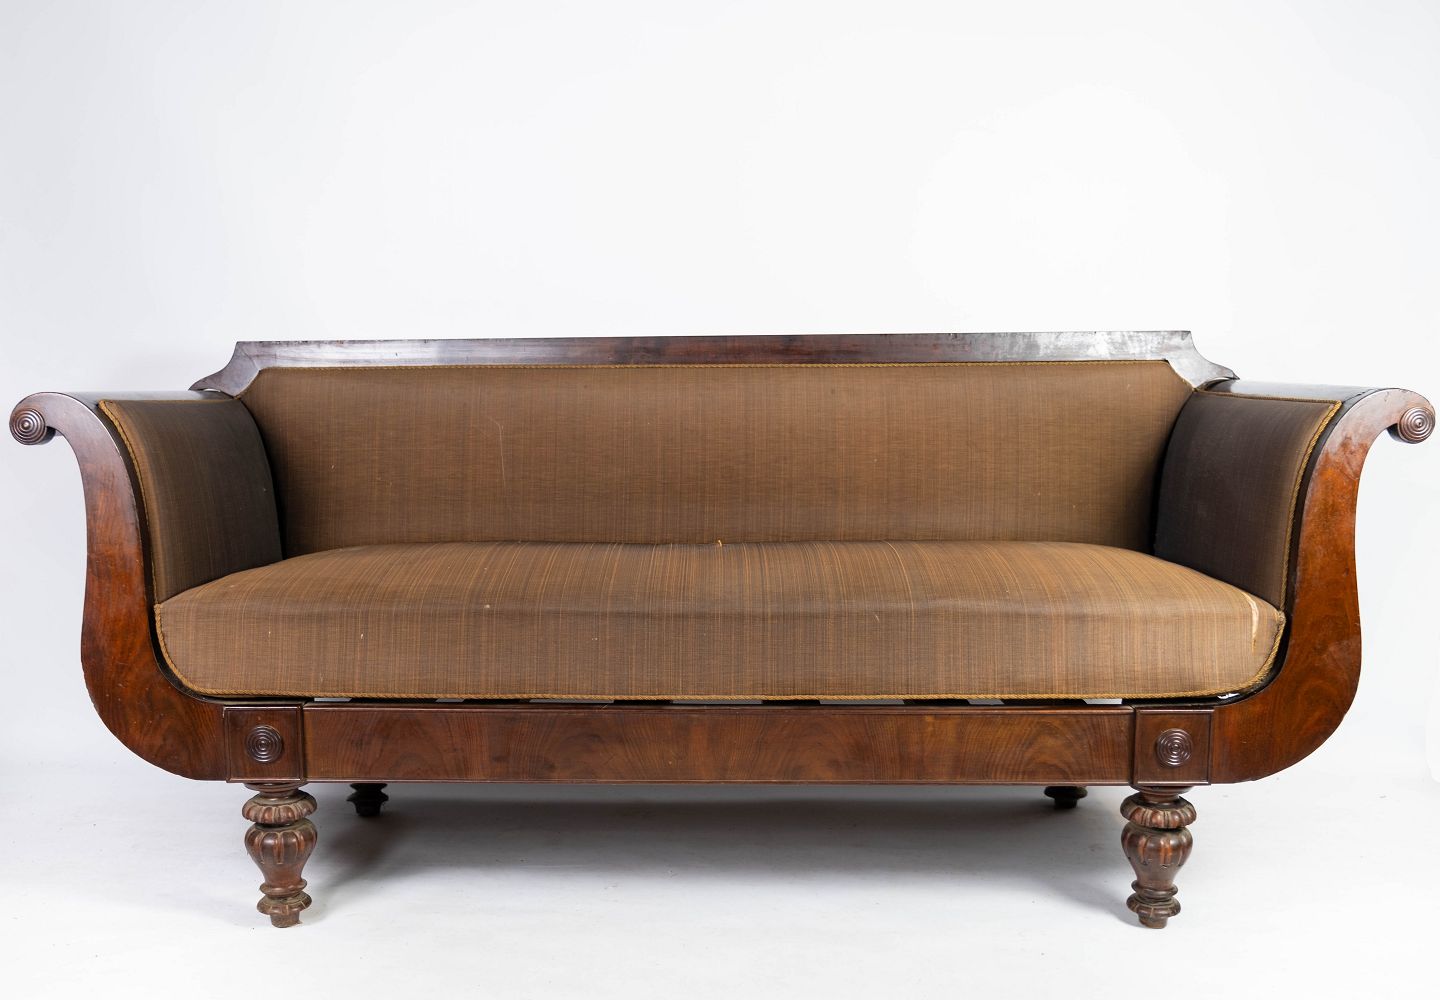 ringen - Antik sofa polstret med brunt stof of stel af mørkt træ fra 1860. * 5000m2 - Antik sofa polstret med brunt stof of stel af mørkt træ fra 1860. 5000m2 udsti